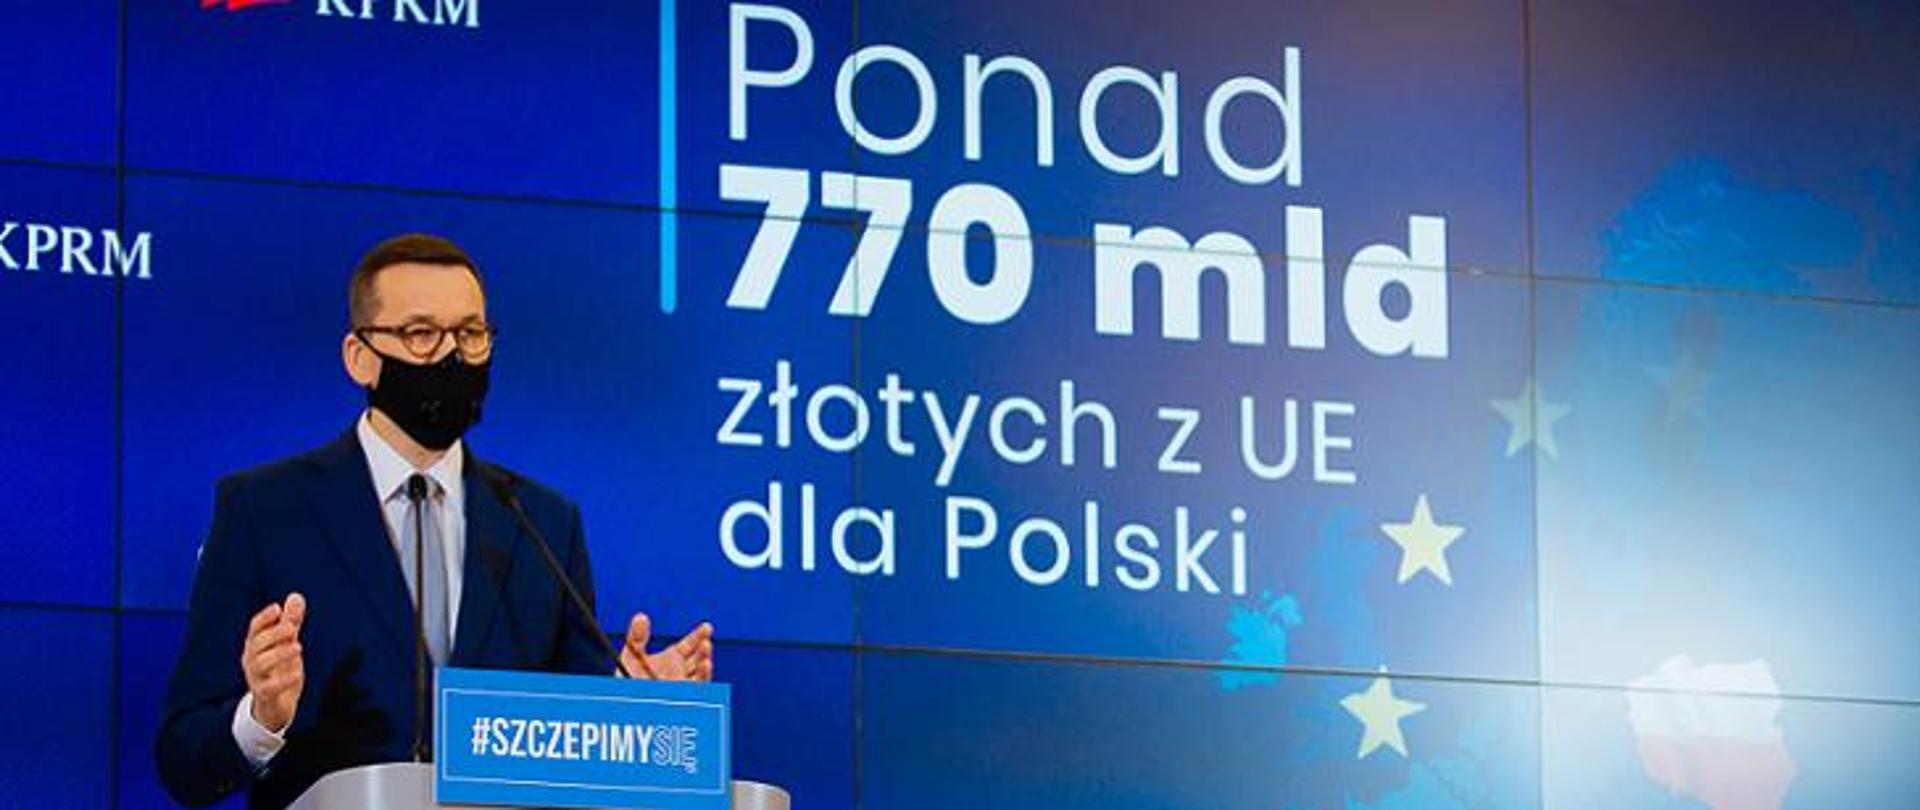 Premier Mateusz Morawiecki, w tle baner z napisem: Ponad 770 mld złotych z UE dla Polski